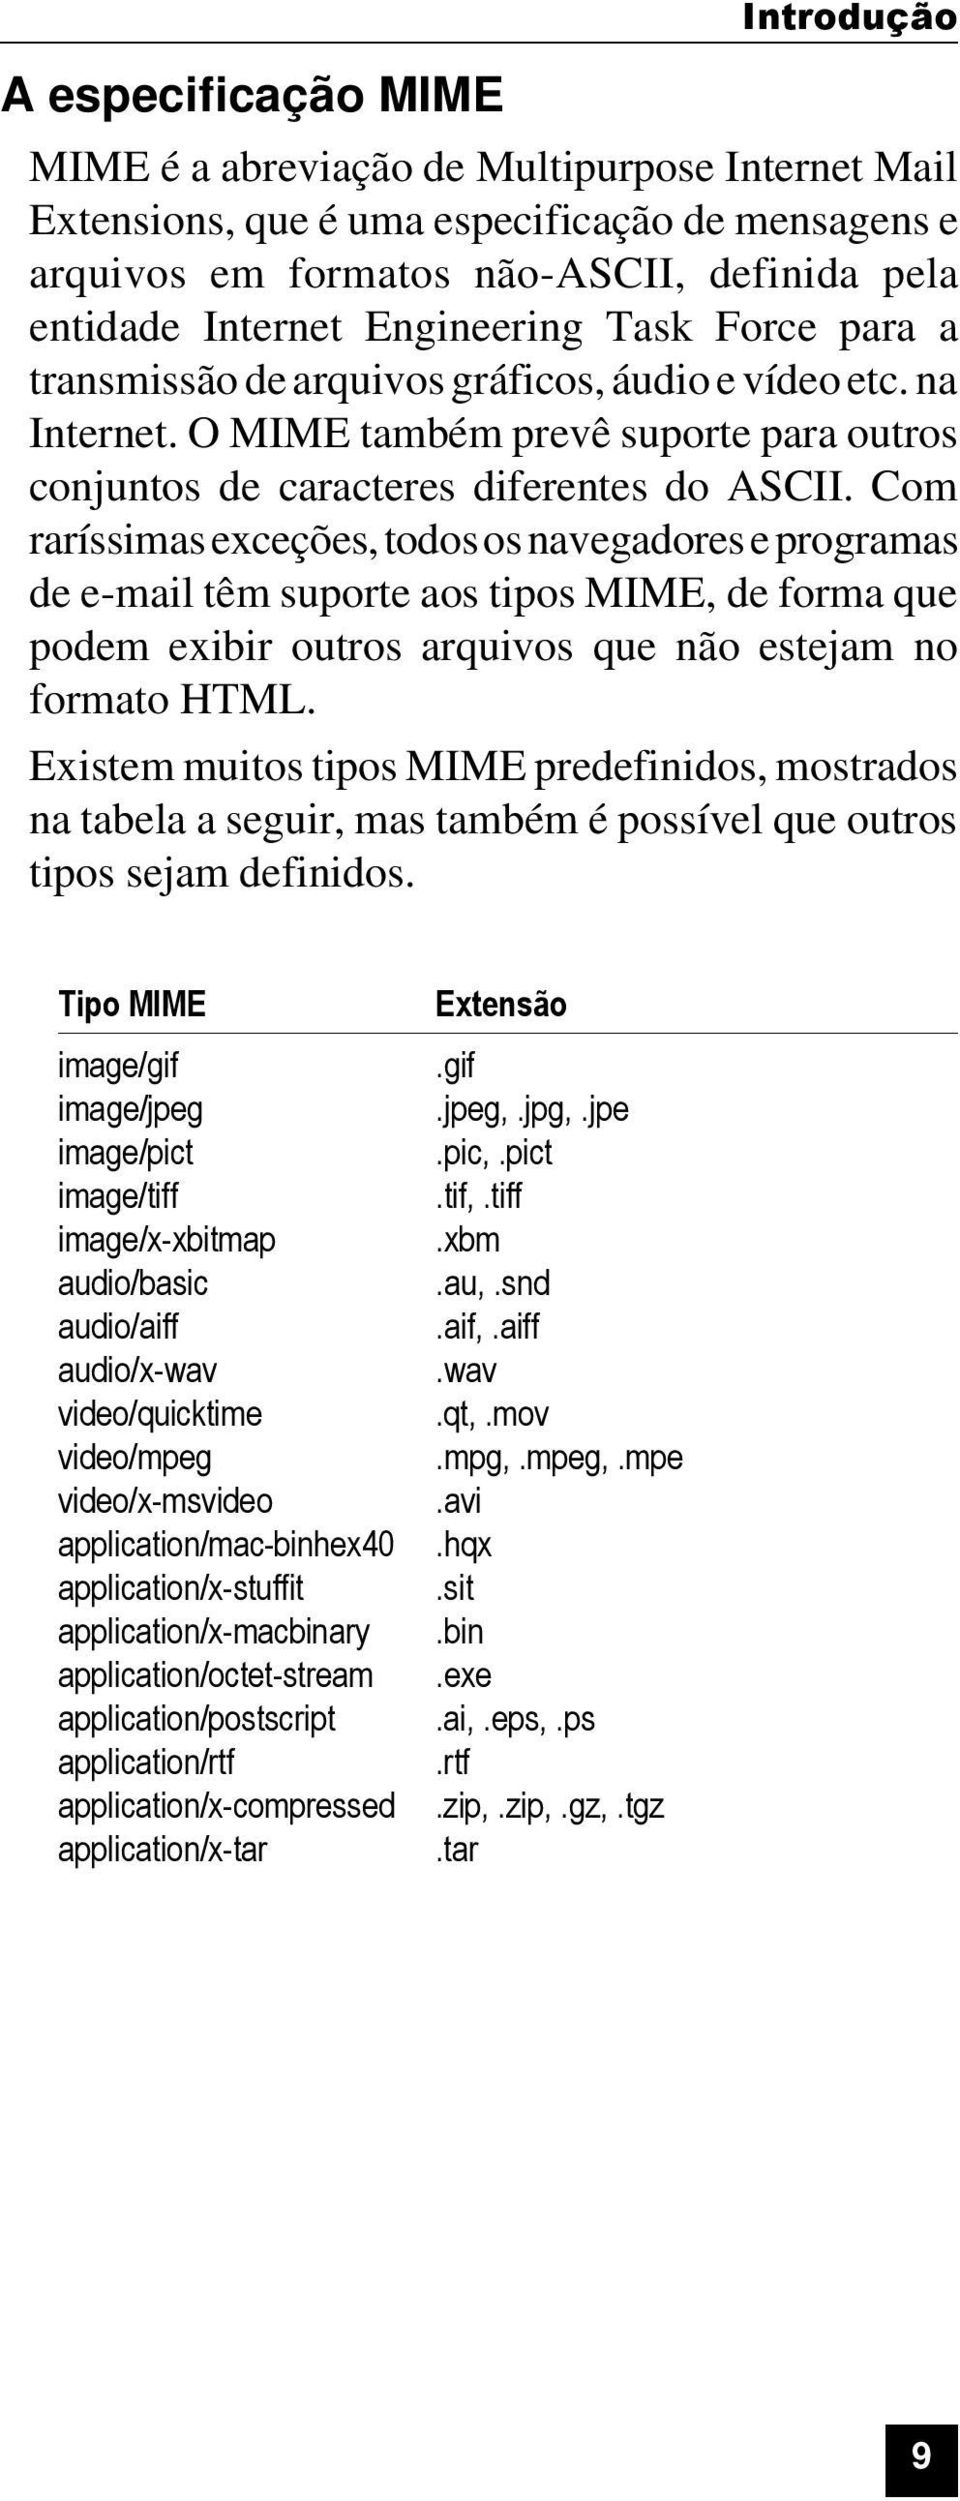 Com raríssimas exceções, todos os navegadores e programas de e-mail têm suporte aos tipos MIME, de forma que podem exibir outros arquivos que não estejam no formato HTML.